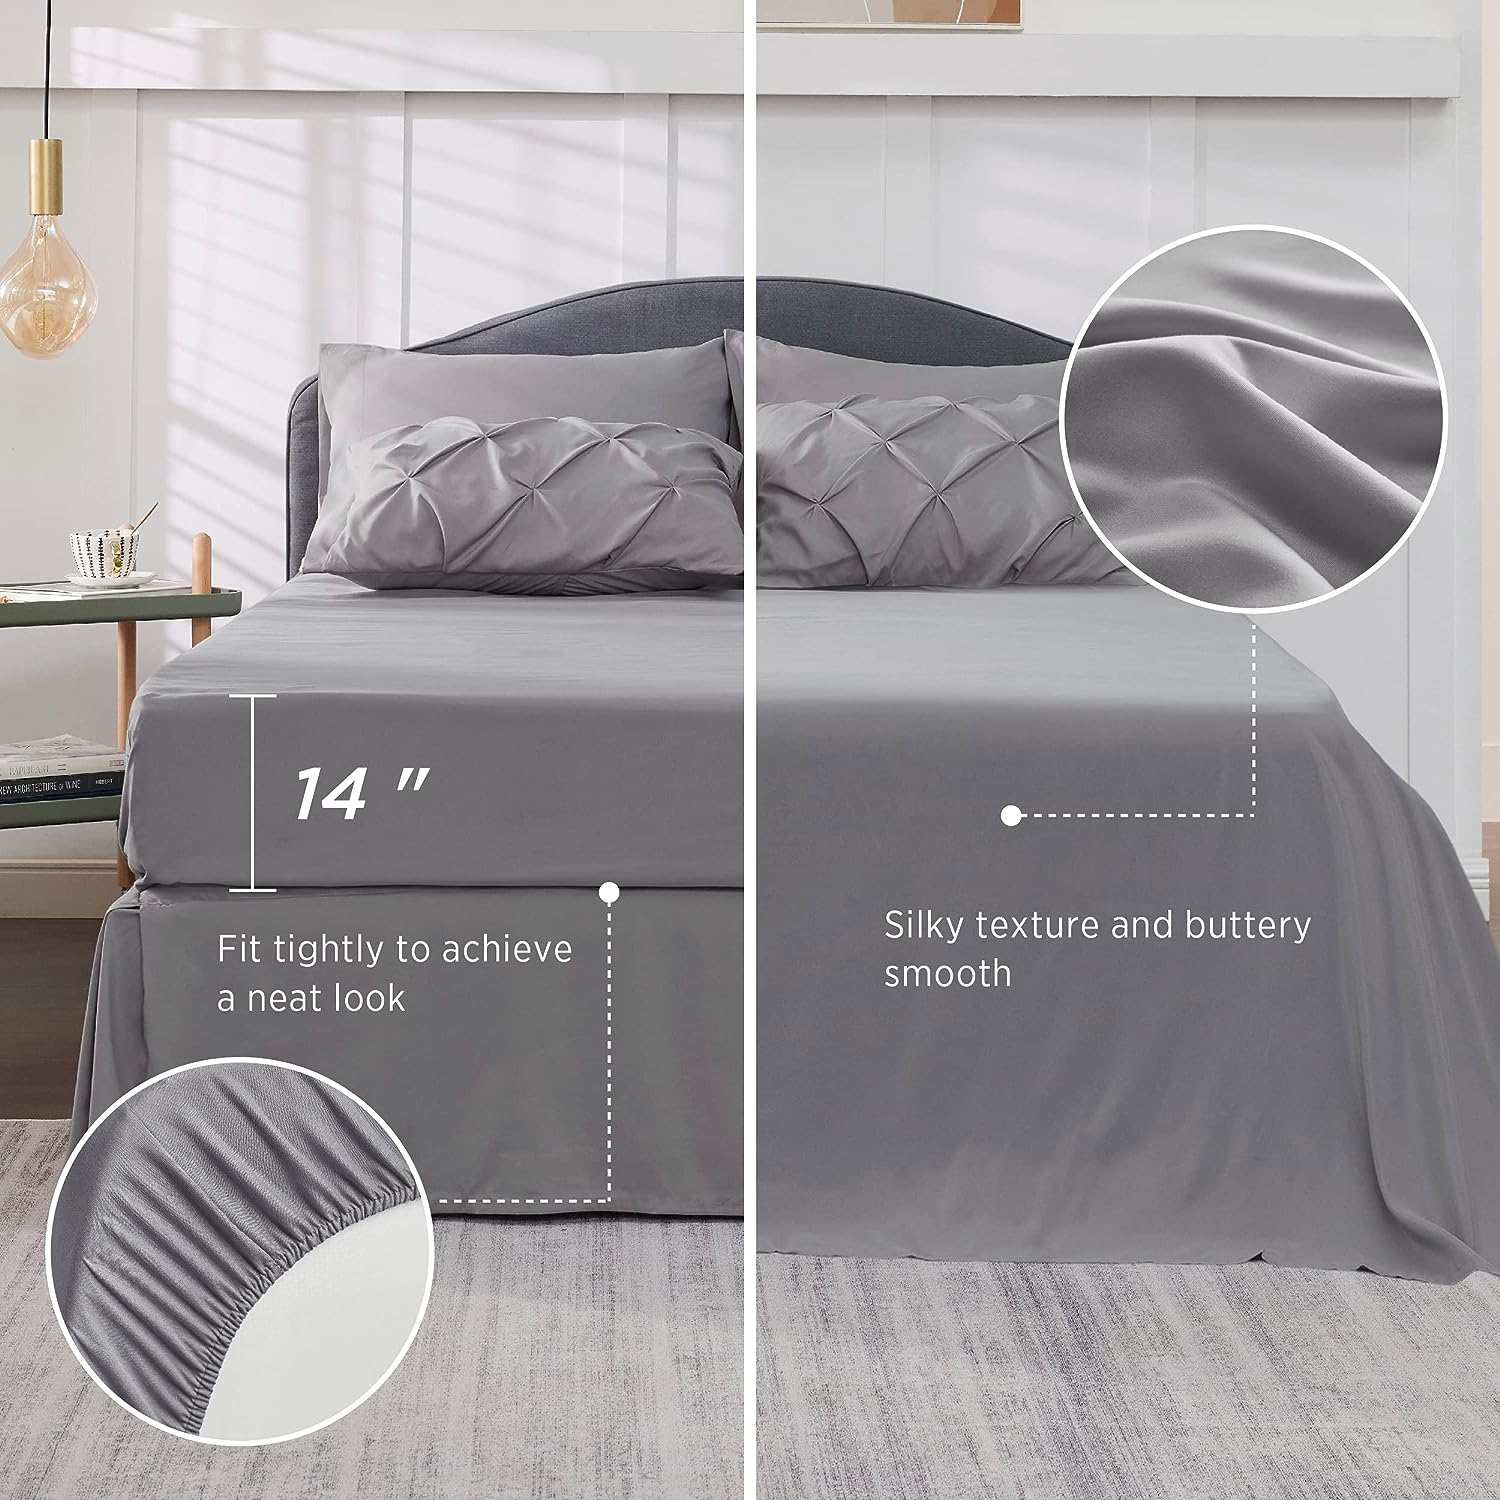 Bedsure Queen Comforter Set - 7 Pieces Comforters Queen Size Grey